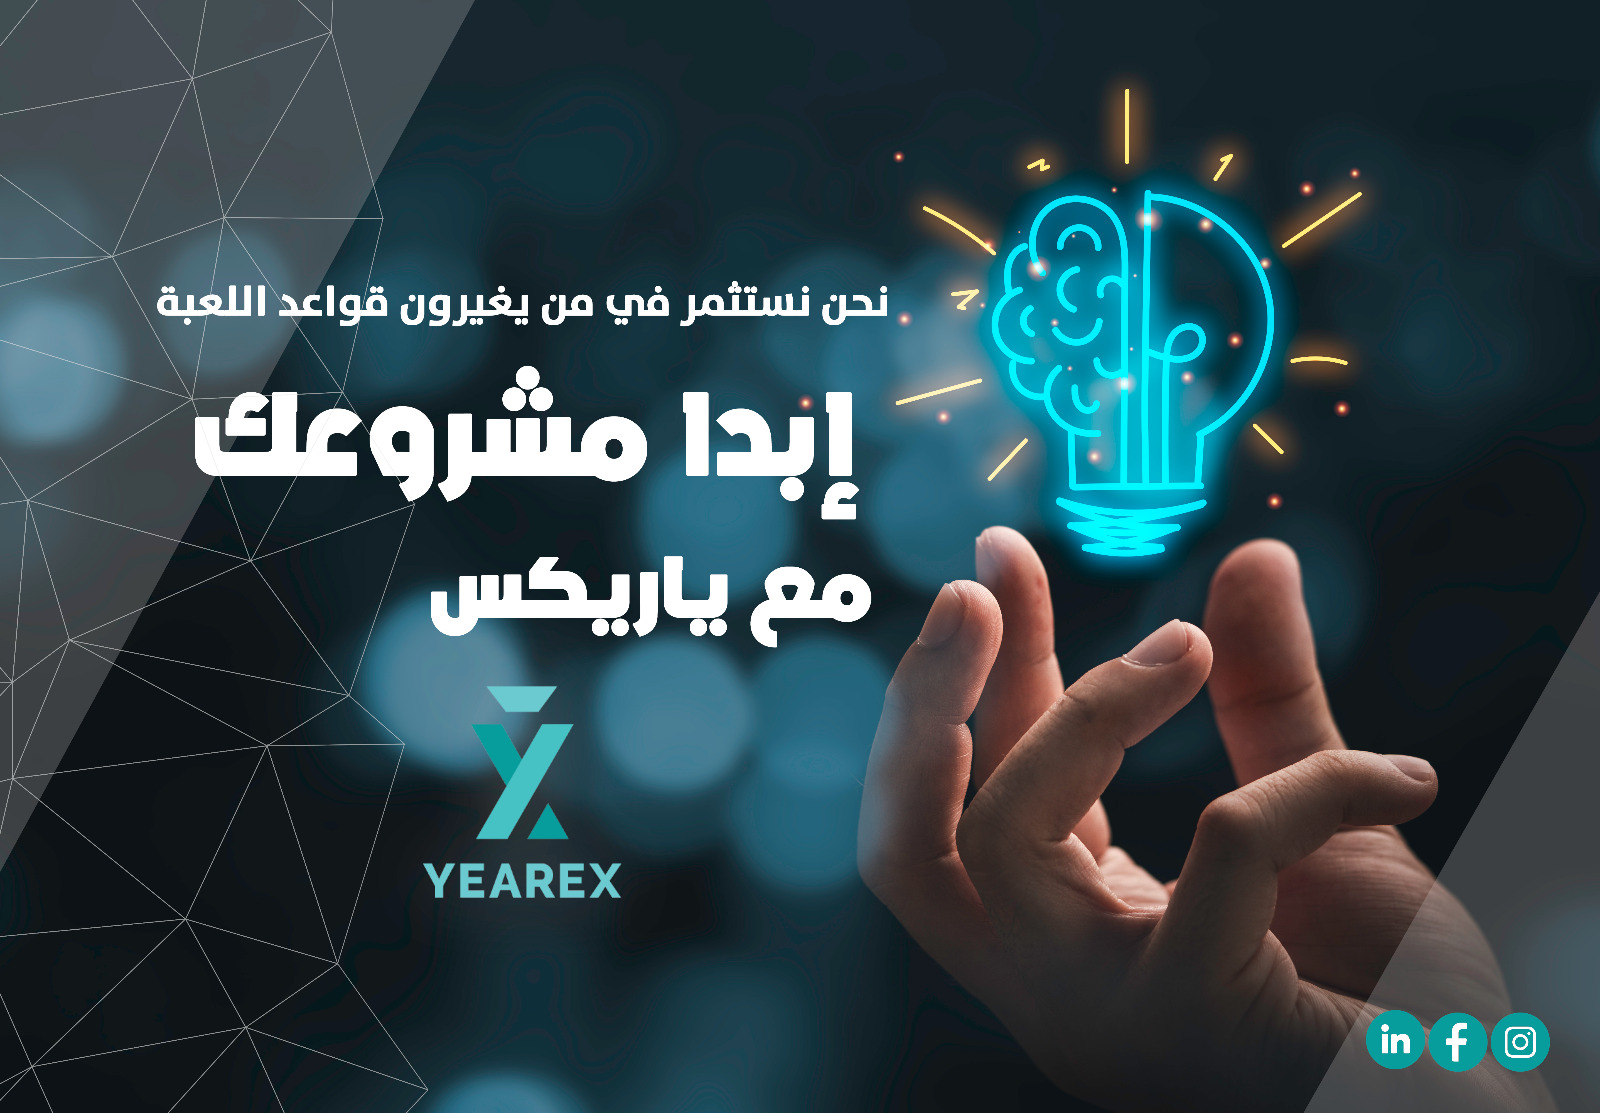 أ.حسن الكاهلي ، رئيس مجلس ادارة مجموعة ياريكس ، يقدم مبادرة ذهبية لاصحاب المشاريع الناشئة 